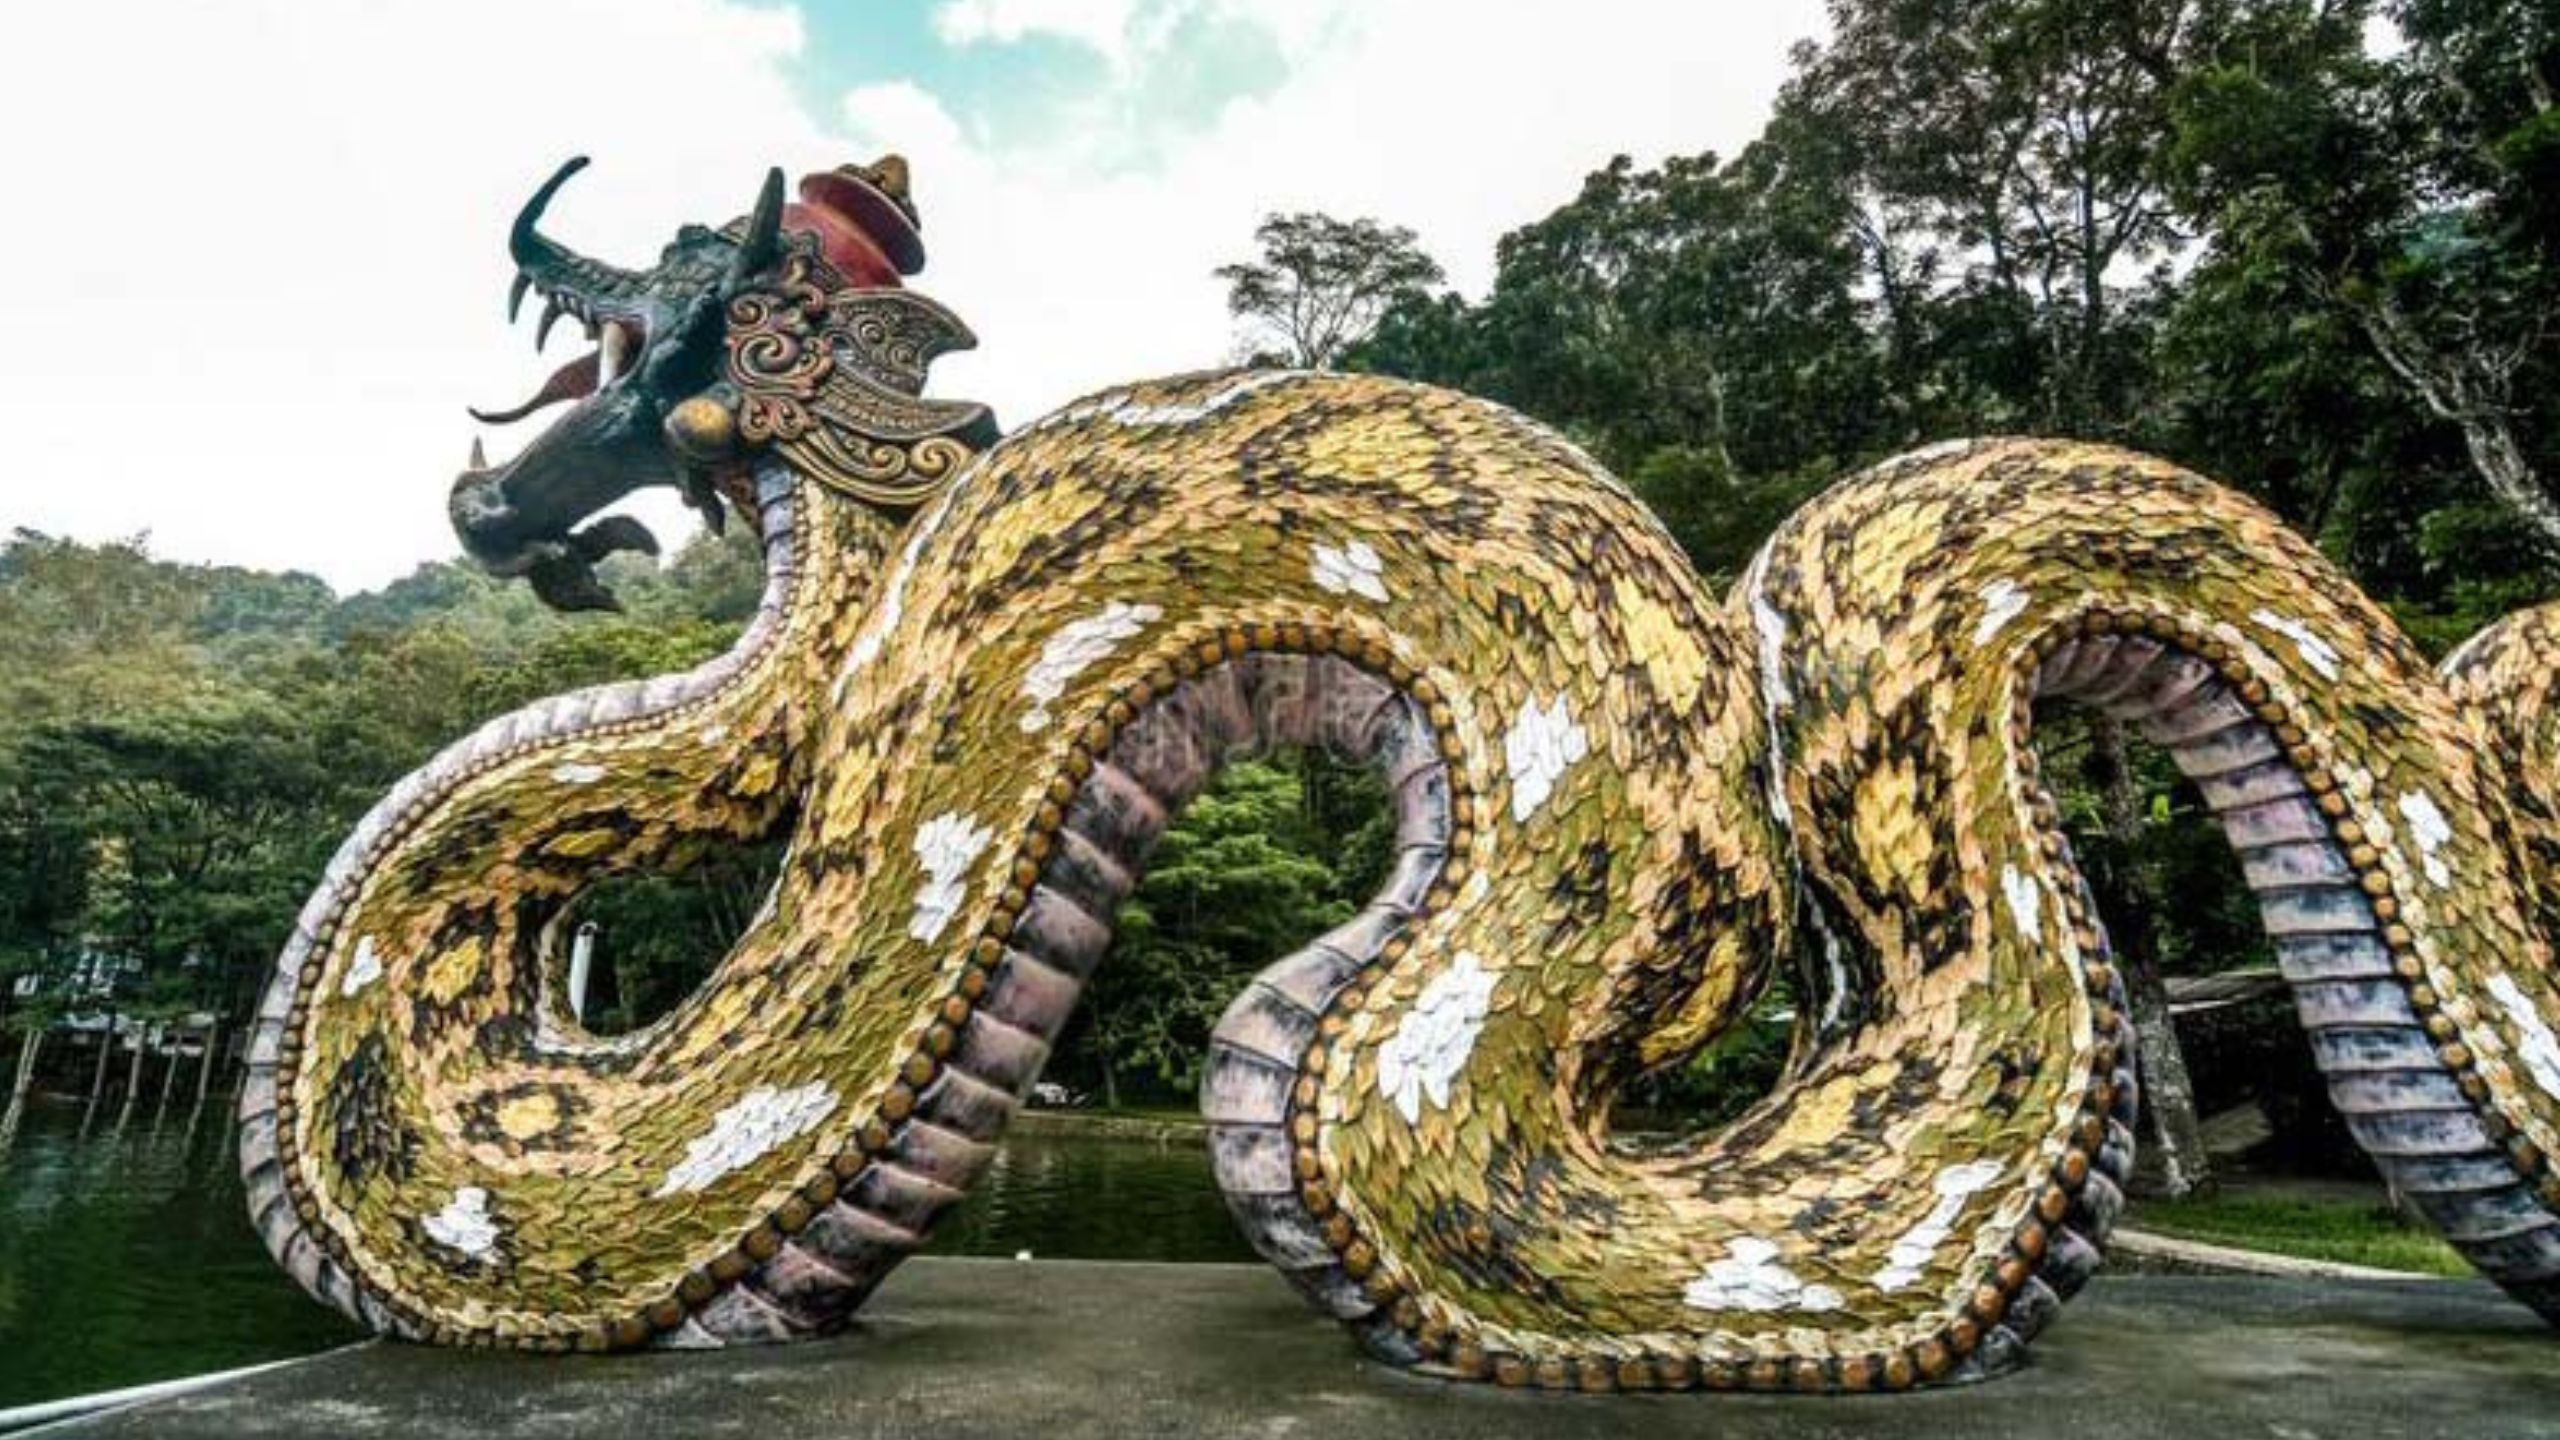 Legenda Naga, Kisah Makhluk Mitologi Paling Terkenal, Cerminan Kekayaan dan Kompleksitas Budaya